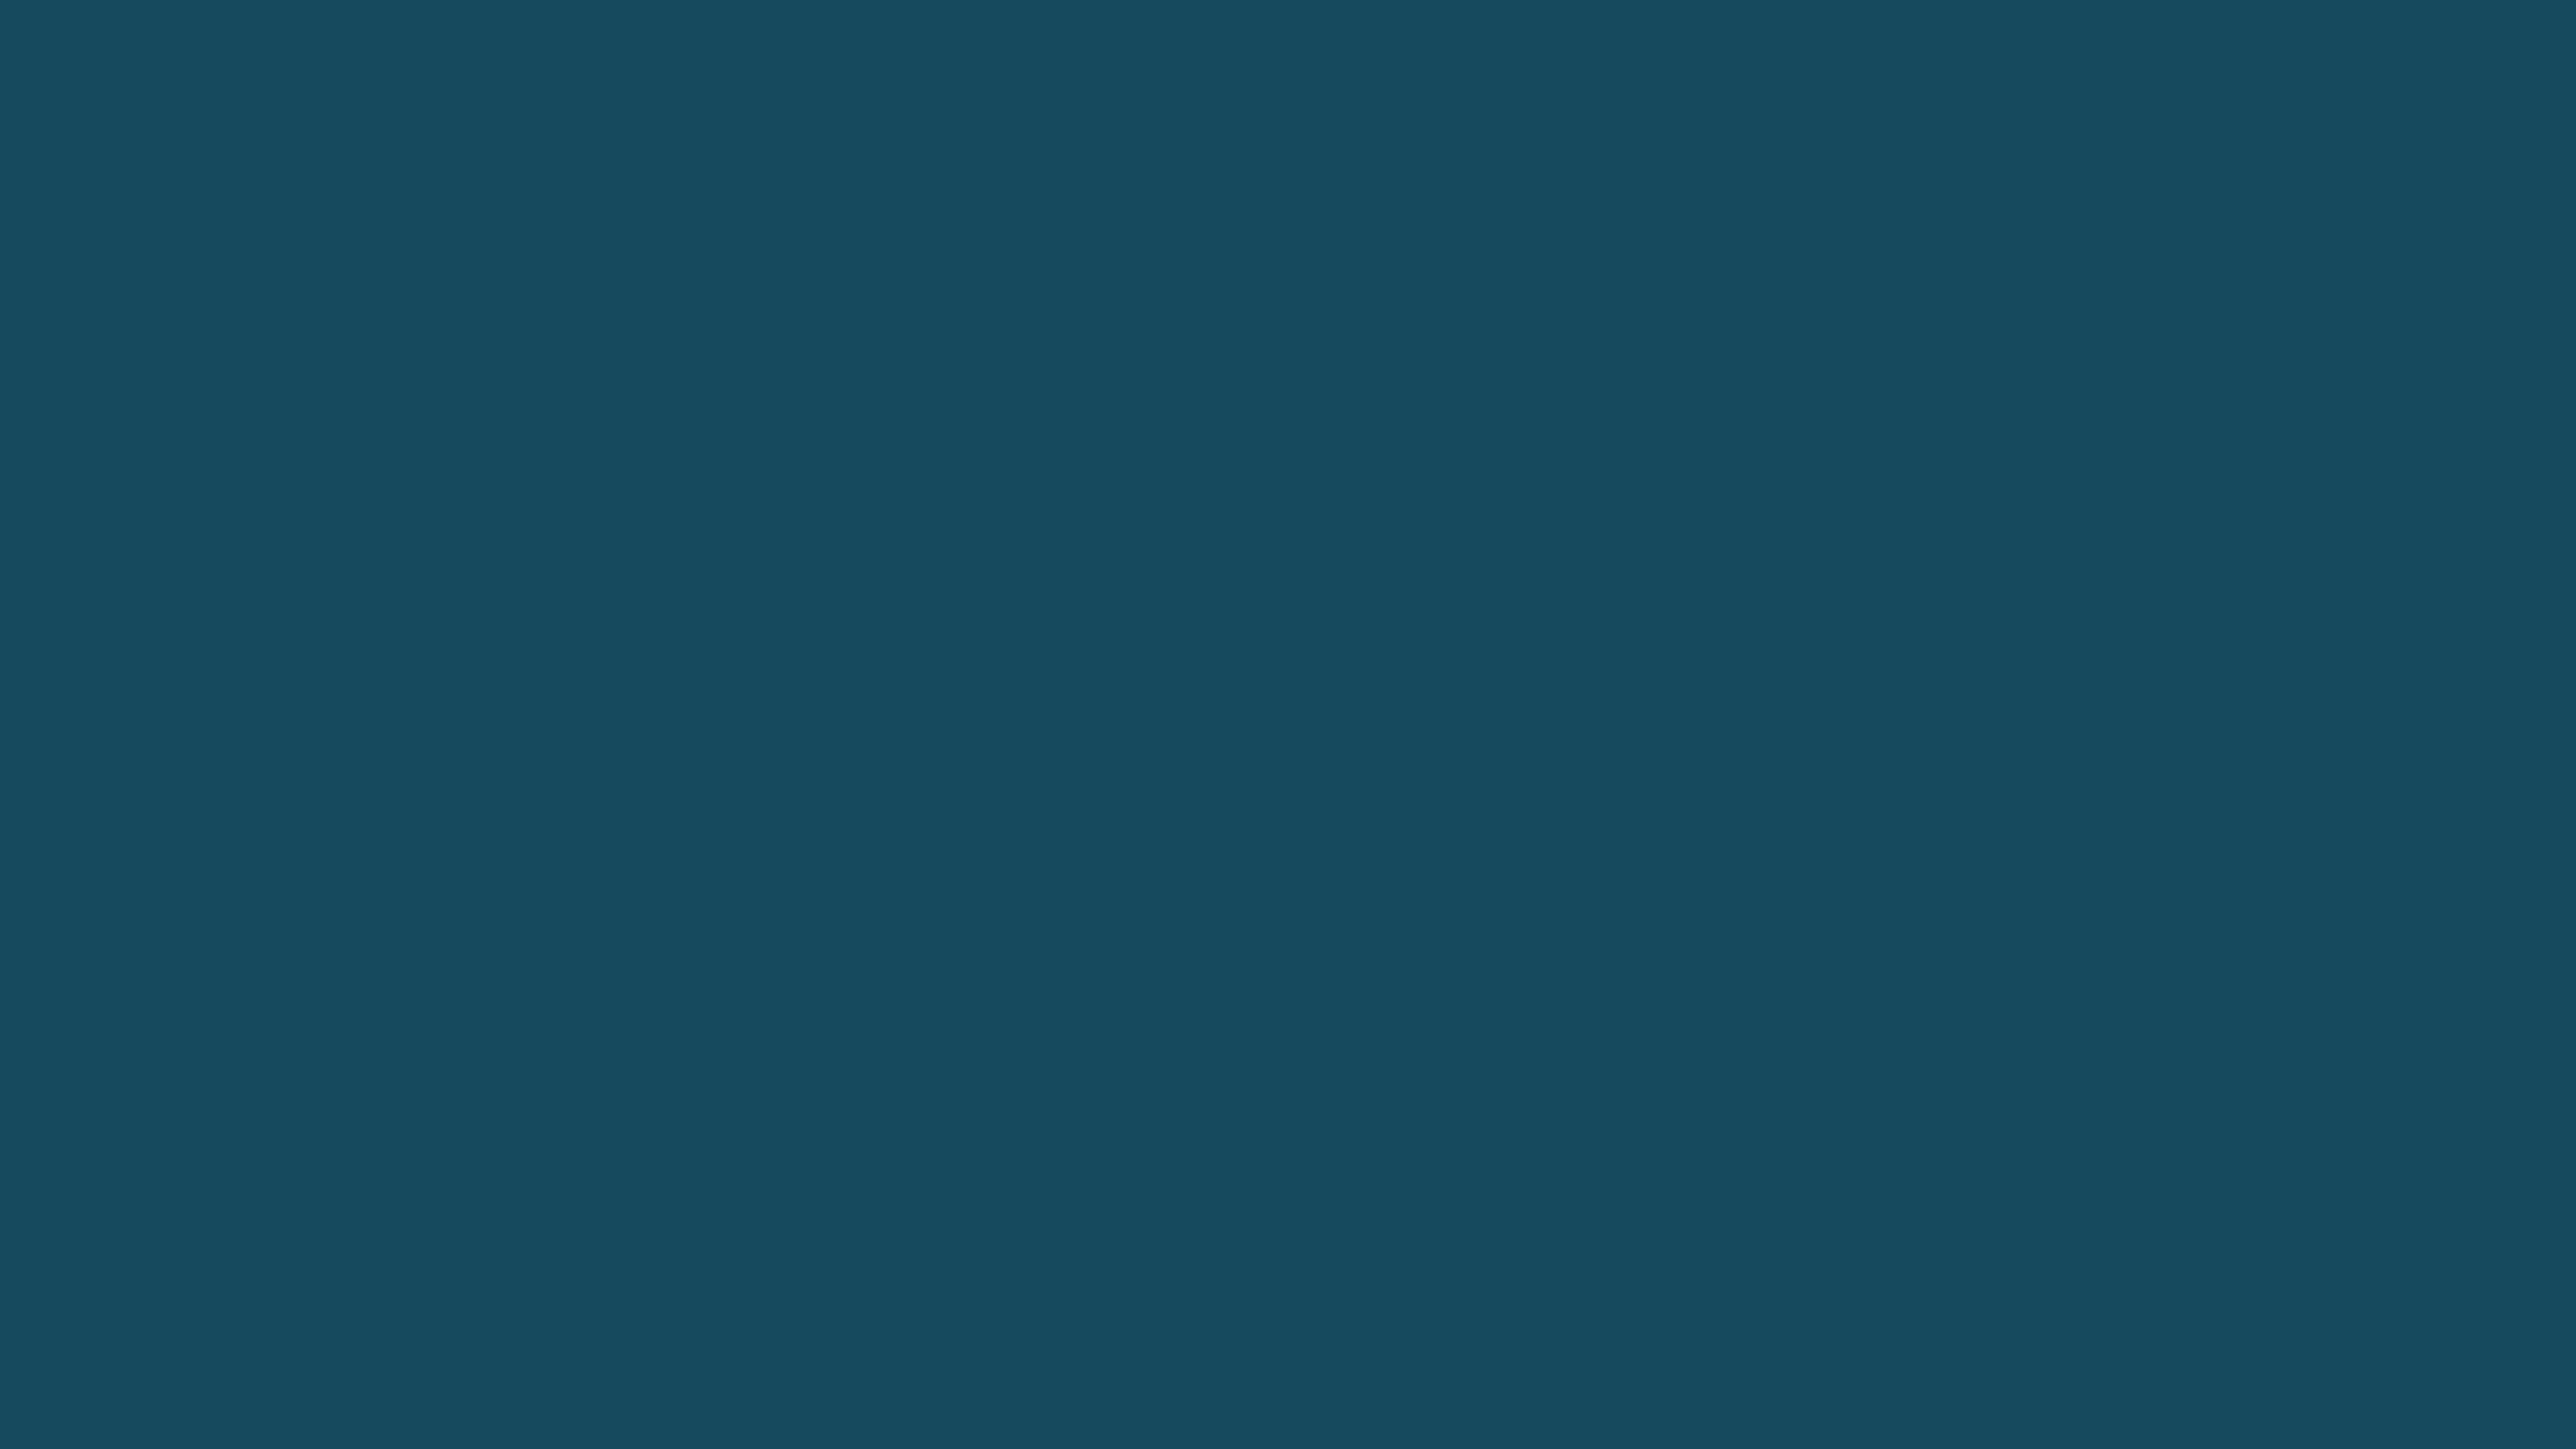 Lazurite Blue ( similar ) Color | 164a5e information | Hsl | Rgb | Pantone